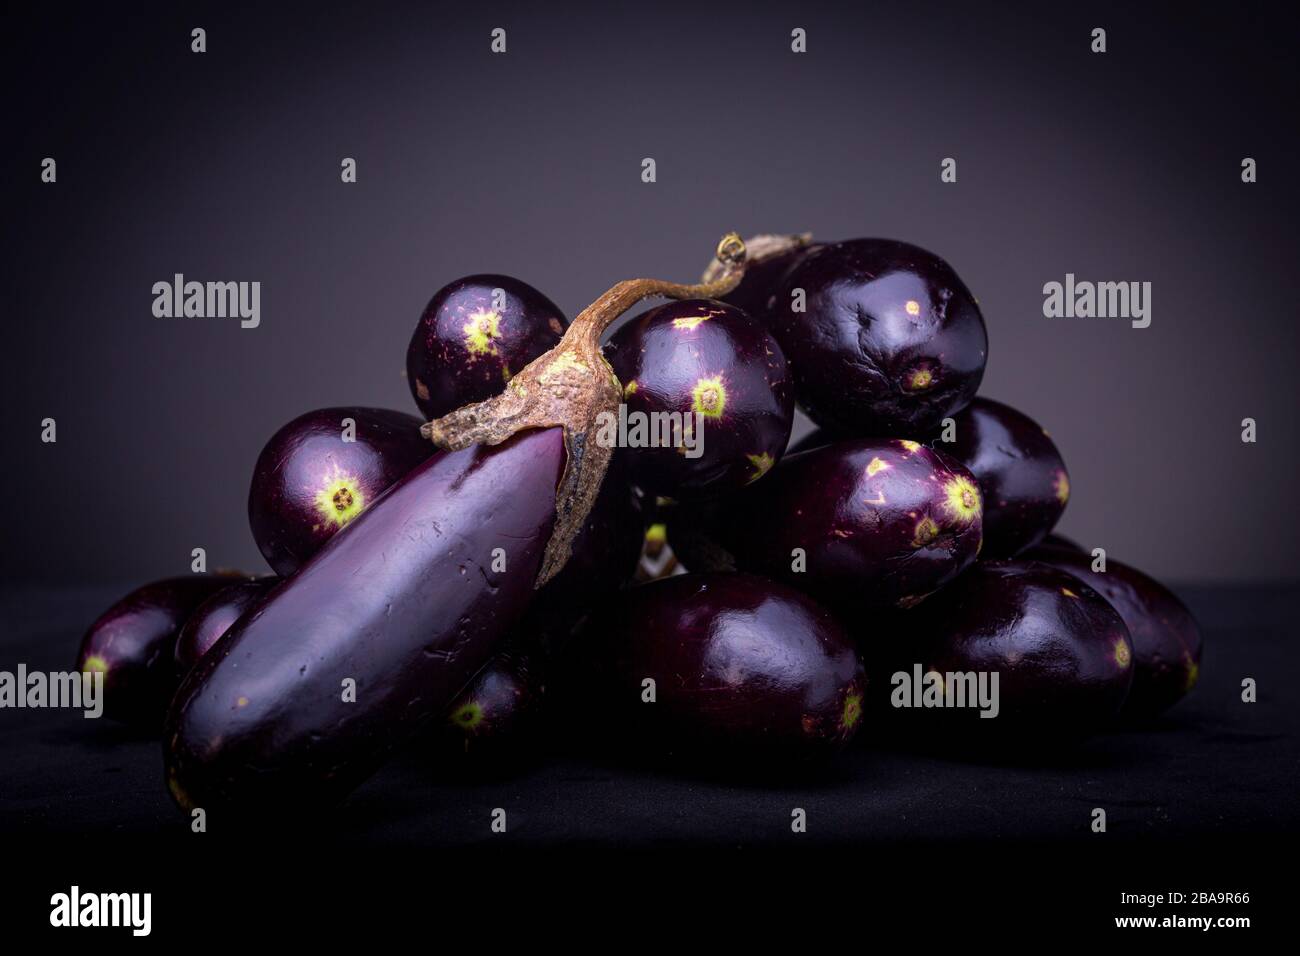 Lebendiges violettes Jungtier auf einem Stapel dunkles Aubergine Gemüse. Studio Low Key Food-Bild auf schwarzer Oberfläche und dunkelgrauem Hintergrund. Stockfoto